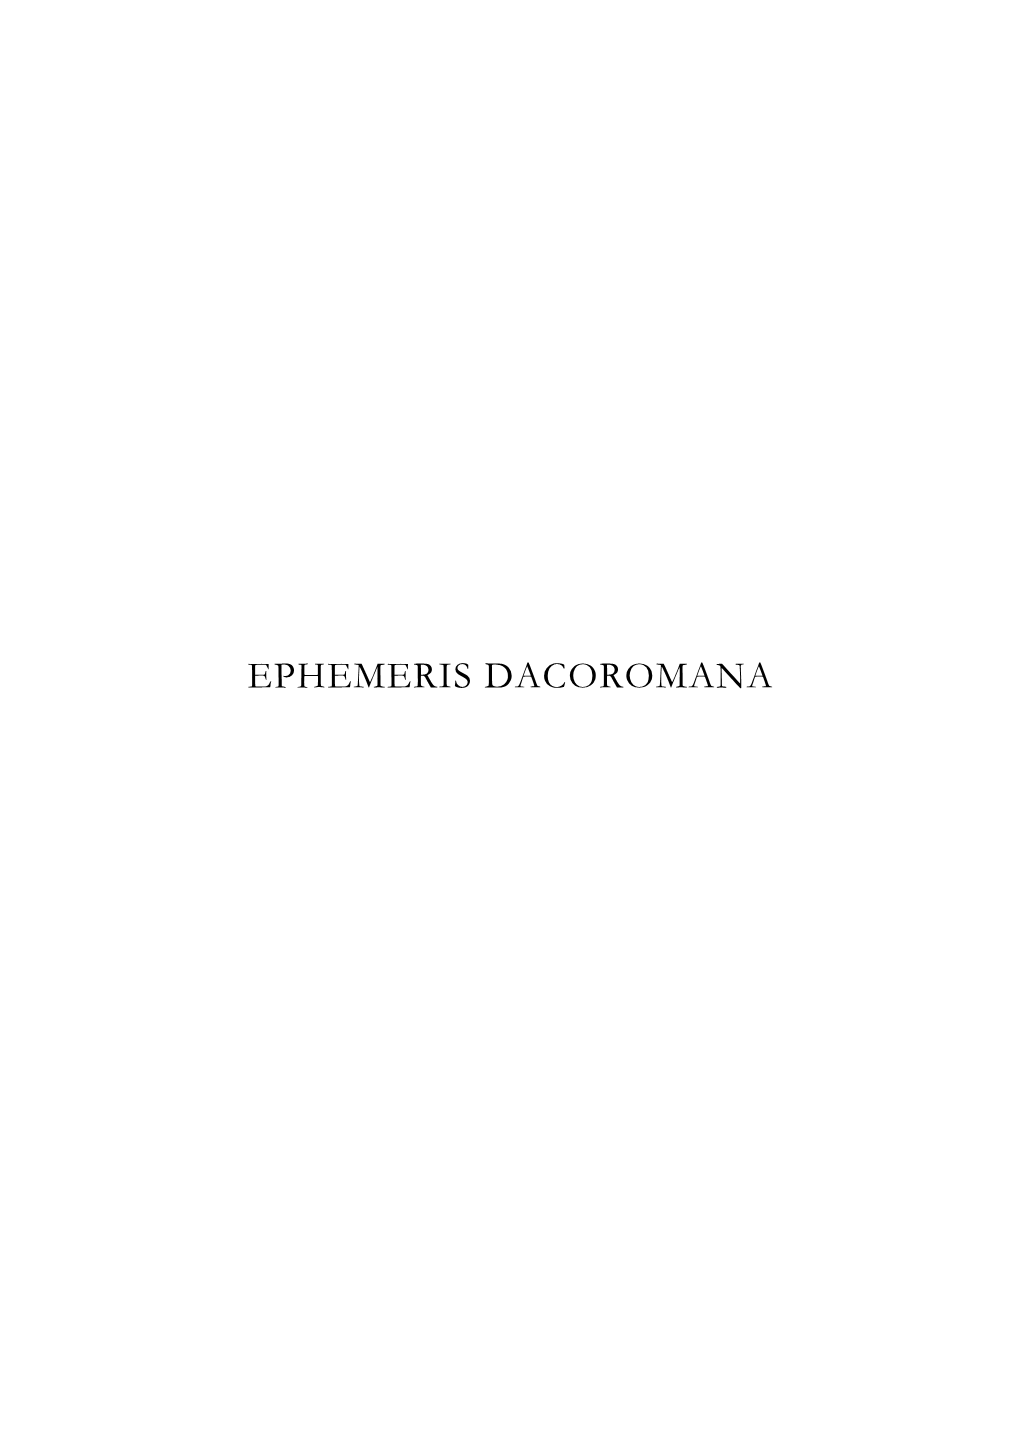 Ephemeris Dacoromana